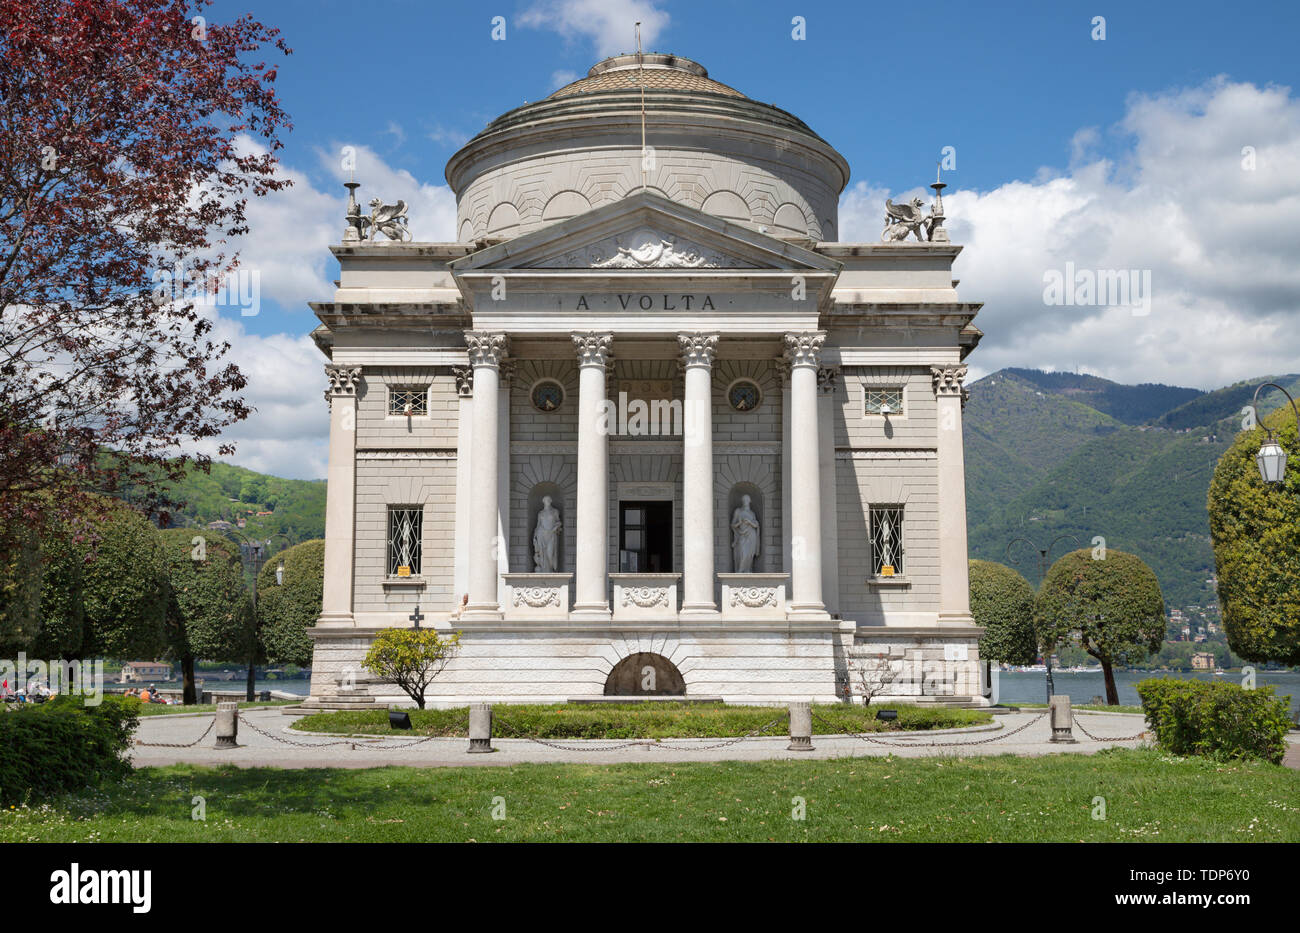 Como - The memorial of Alessandro Volta. Stock Photo